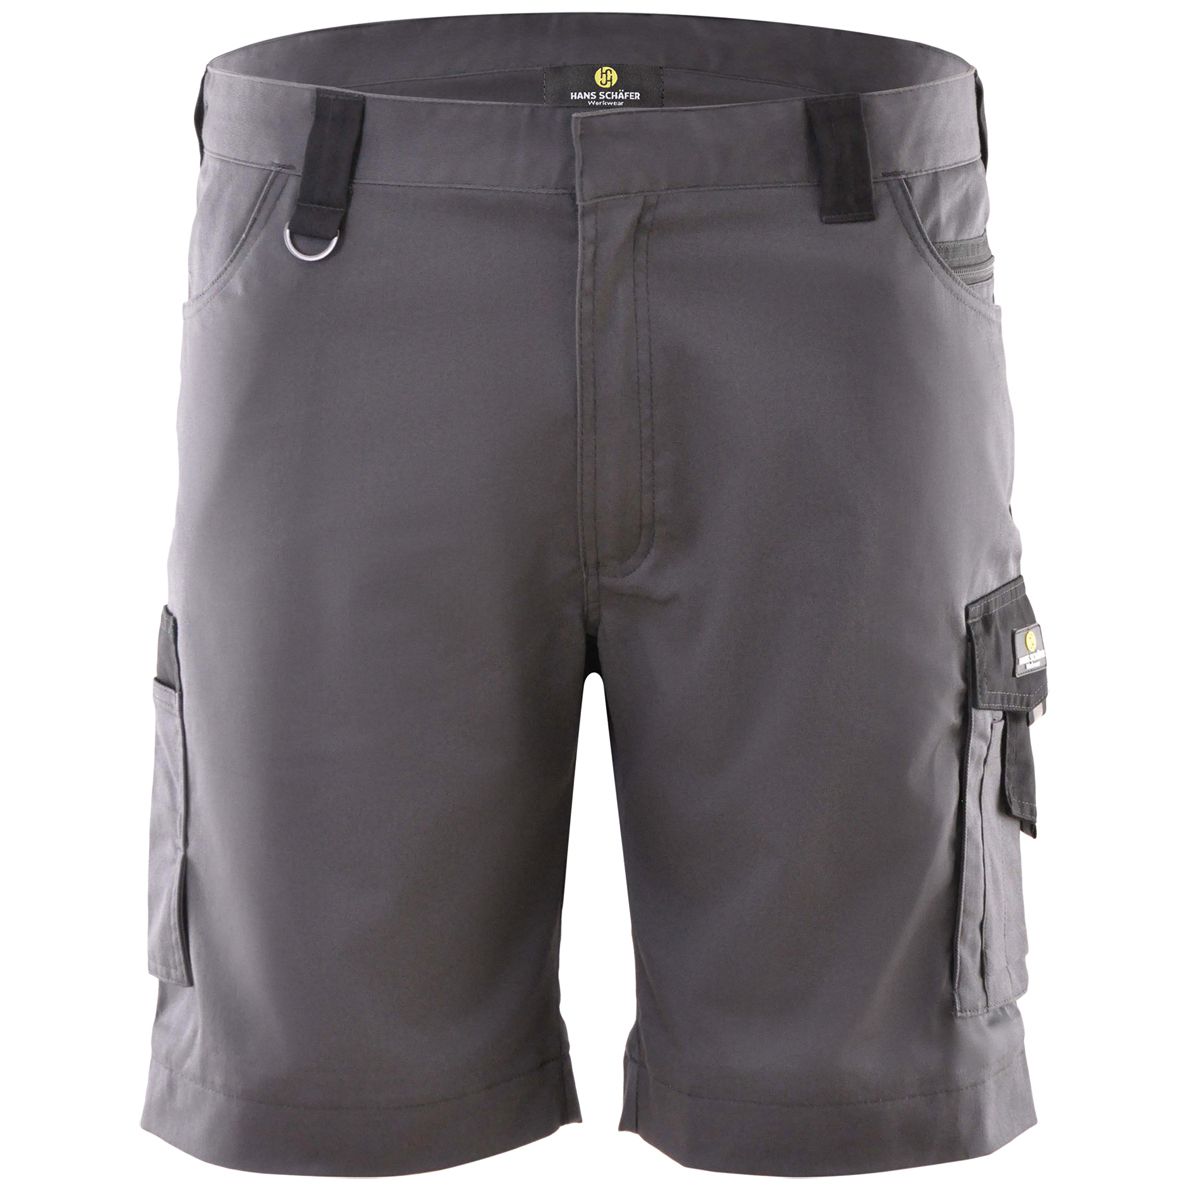 Hans Schäfer work trousers short - Shorts with stretch insert - Cargo bermudas for work - Grey - 56